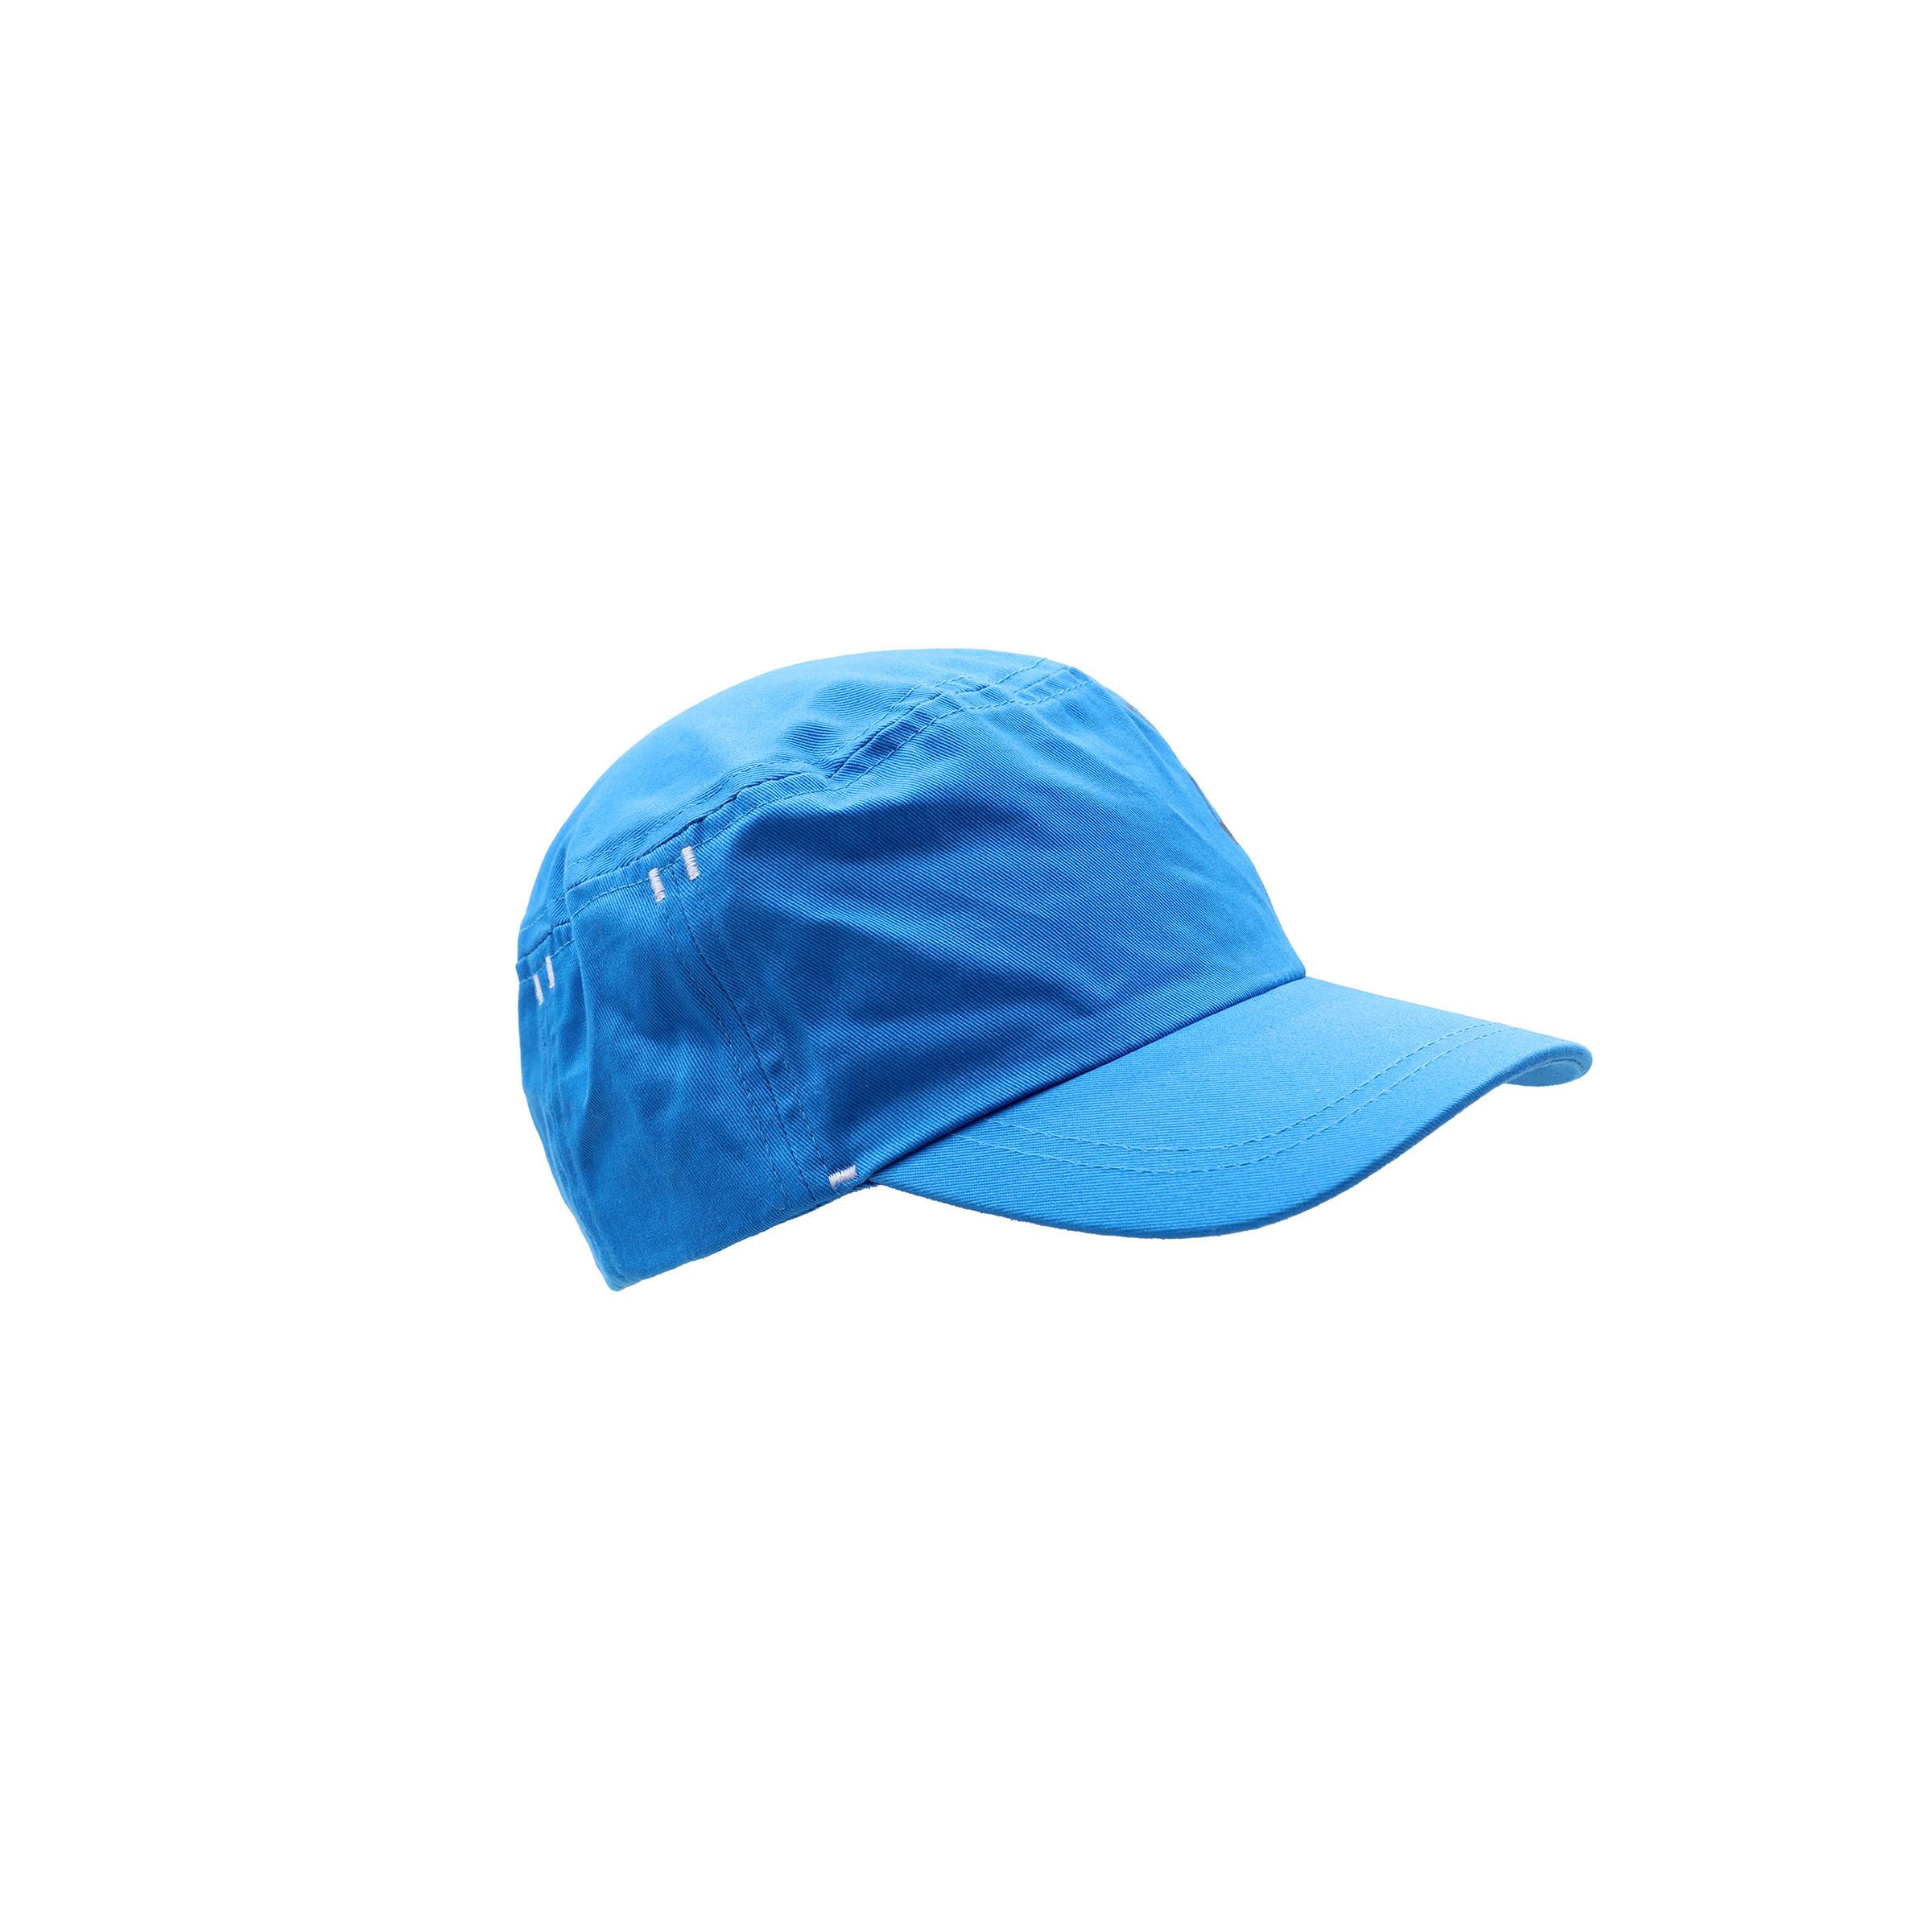 [ด่วน!! โปรโมชั่นมีจำนวนจำกัด] หมวกแก๊ปสำหรับยิมนาสติกเด็กเล็กรุ่น 500 (สีฟ้าพิมพ์ลาย) สำหรับ ยิมนาสติกพิลาทิส